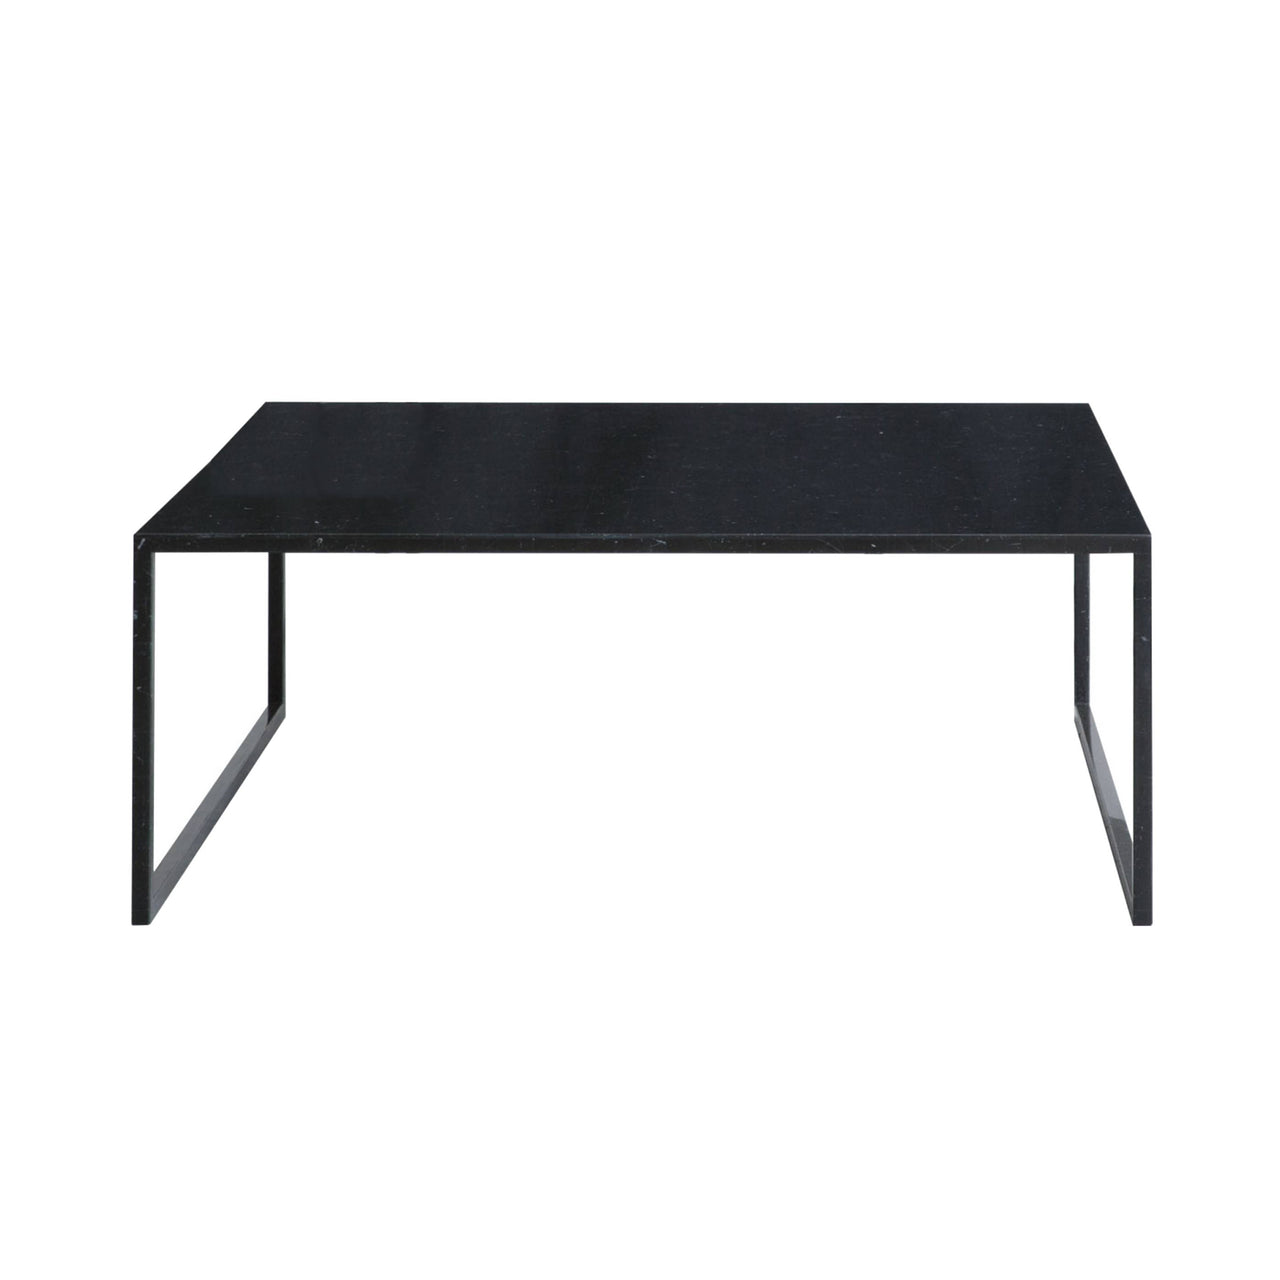 BK Center Table: Black Carrara Marble + Square